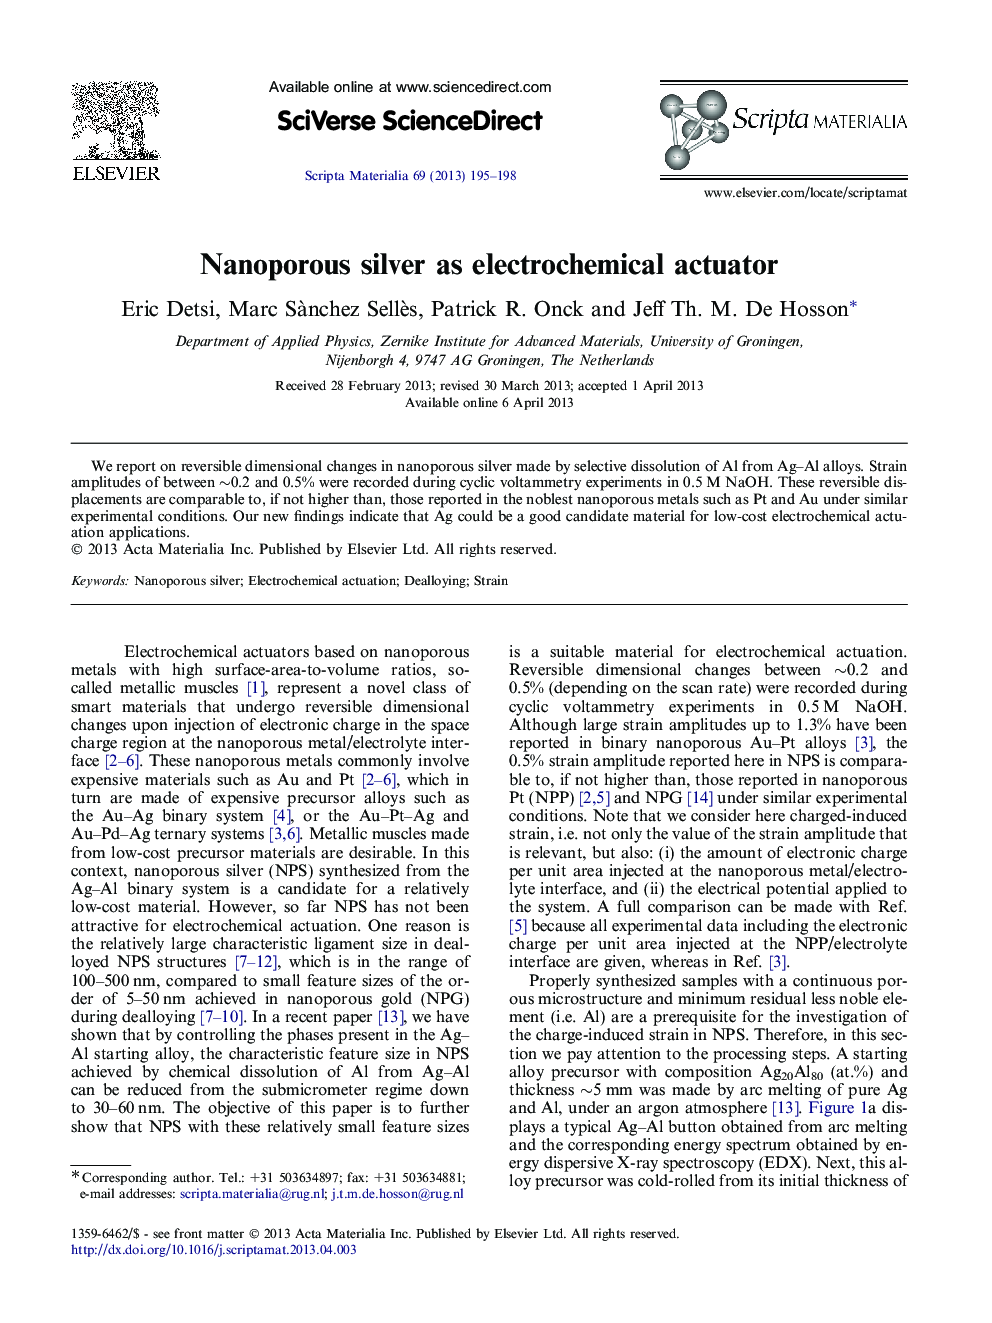 Nanoporous silver as electrochemical actuator